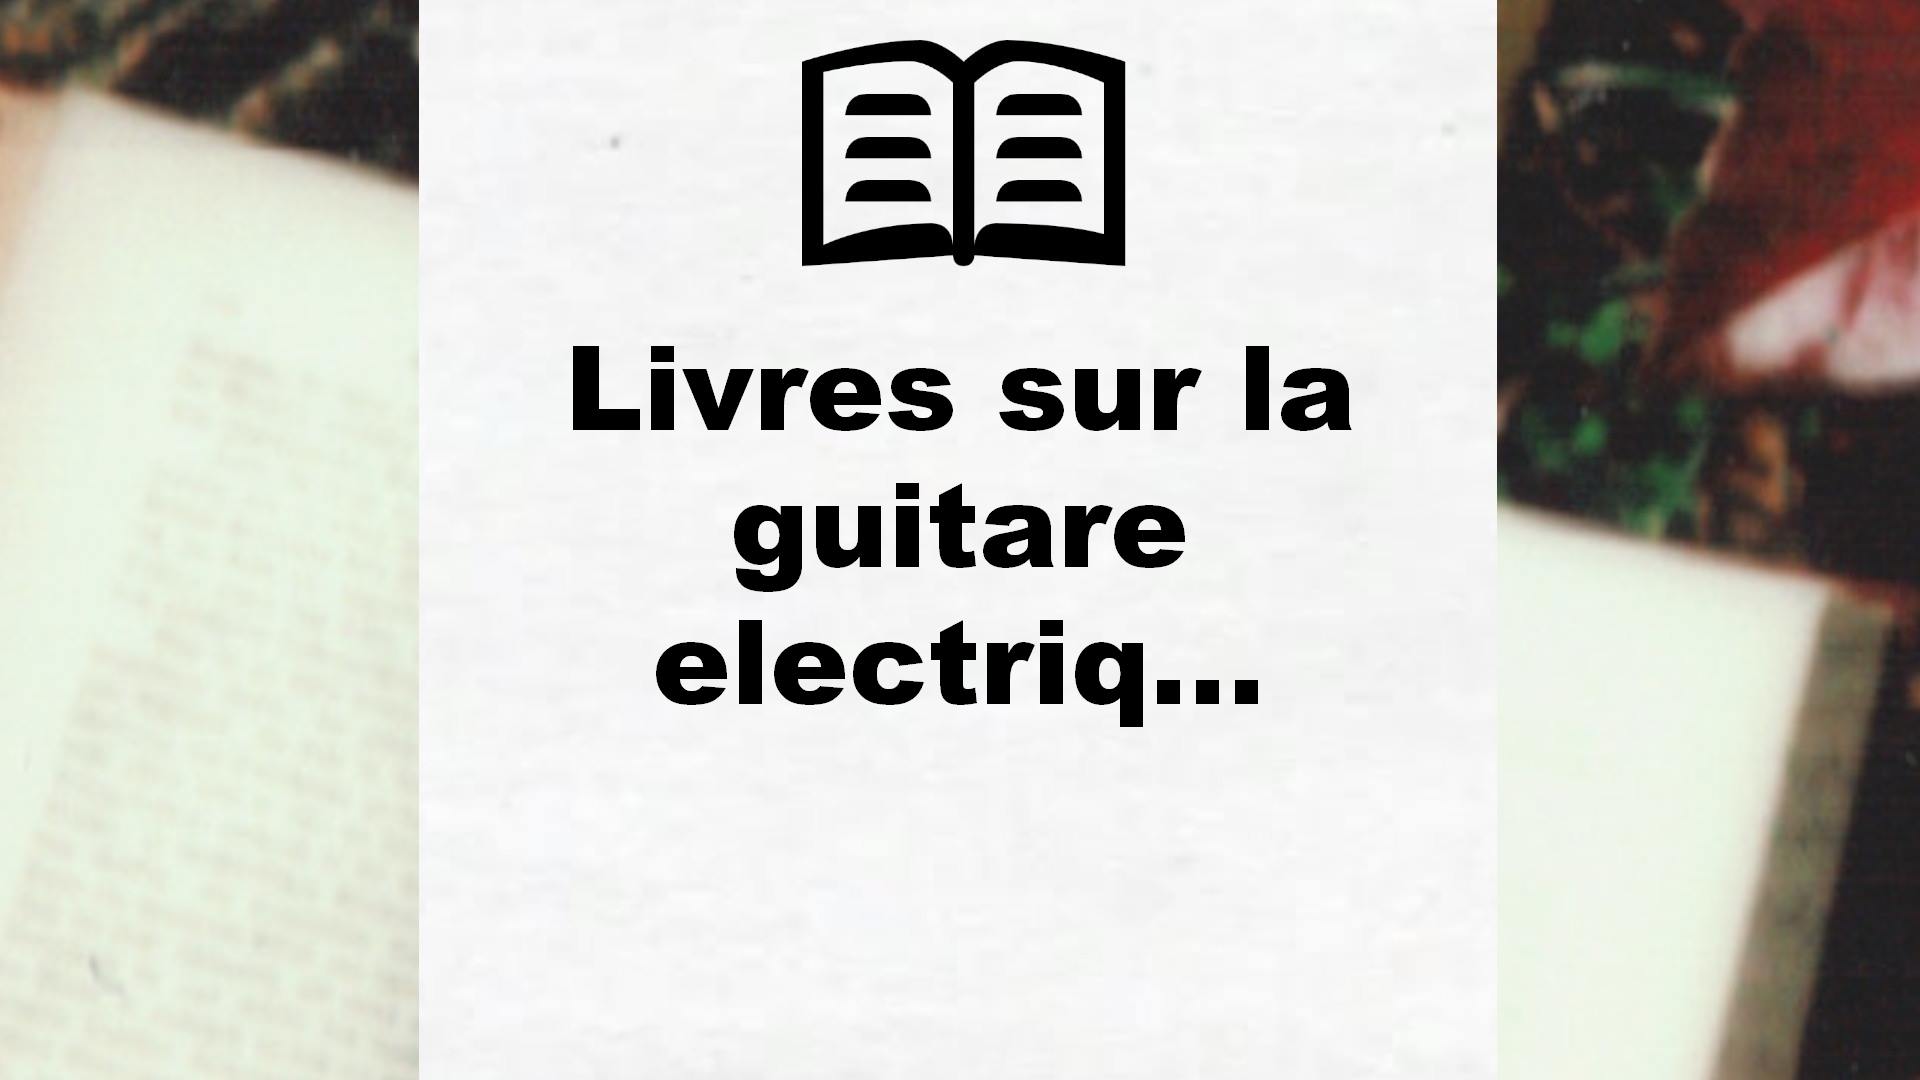 Livres sur la guitare electrique